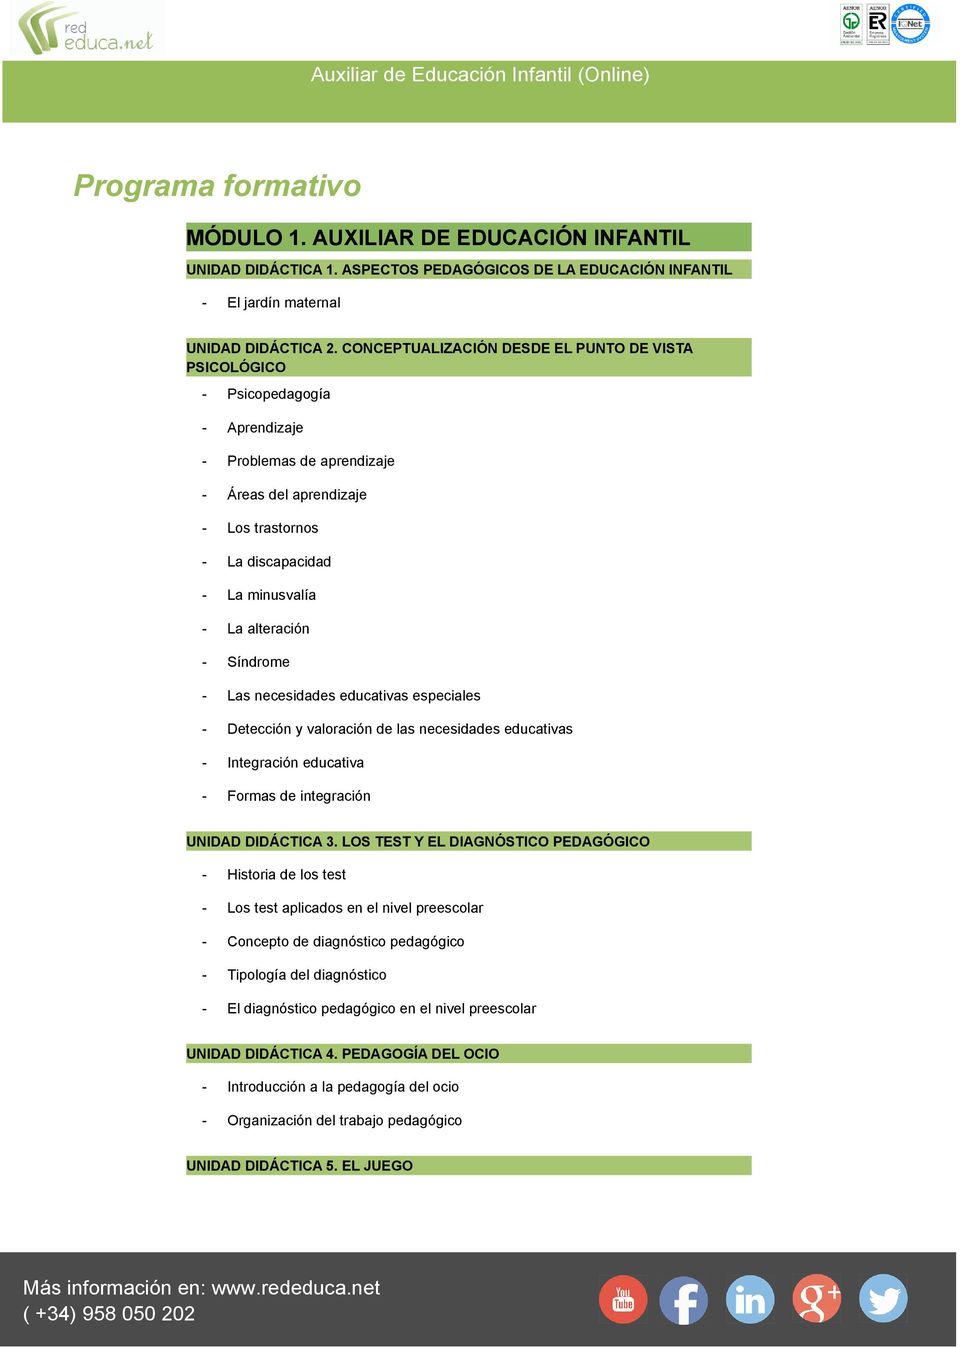 alteración - Síndrome - Las necesidades educativas especiales - Detección y valoración de las necesidades educativas - Integración educativa - Formas de integración UNIDAD DIDÁCTICA 3.